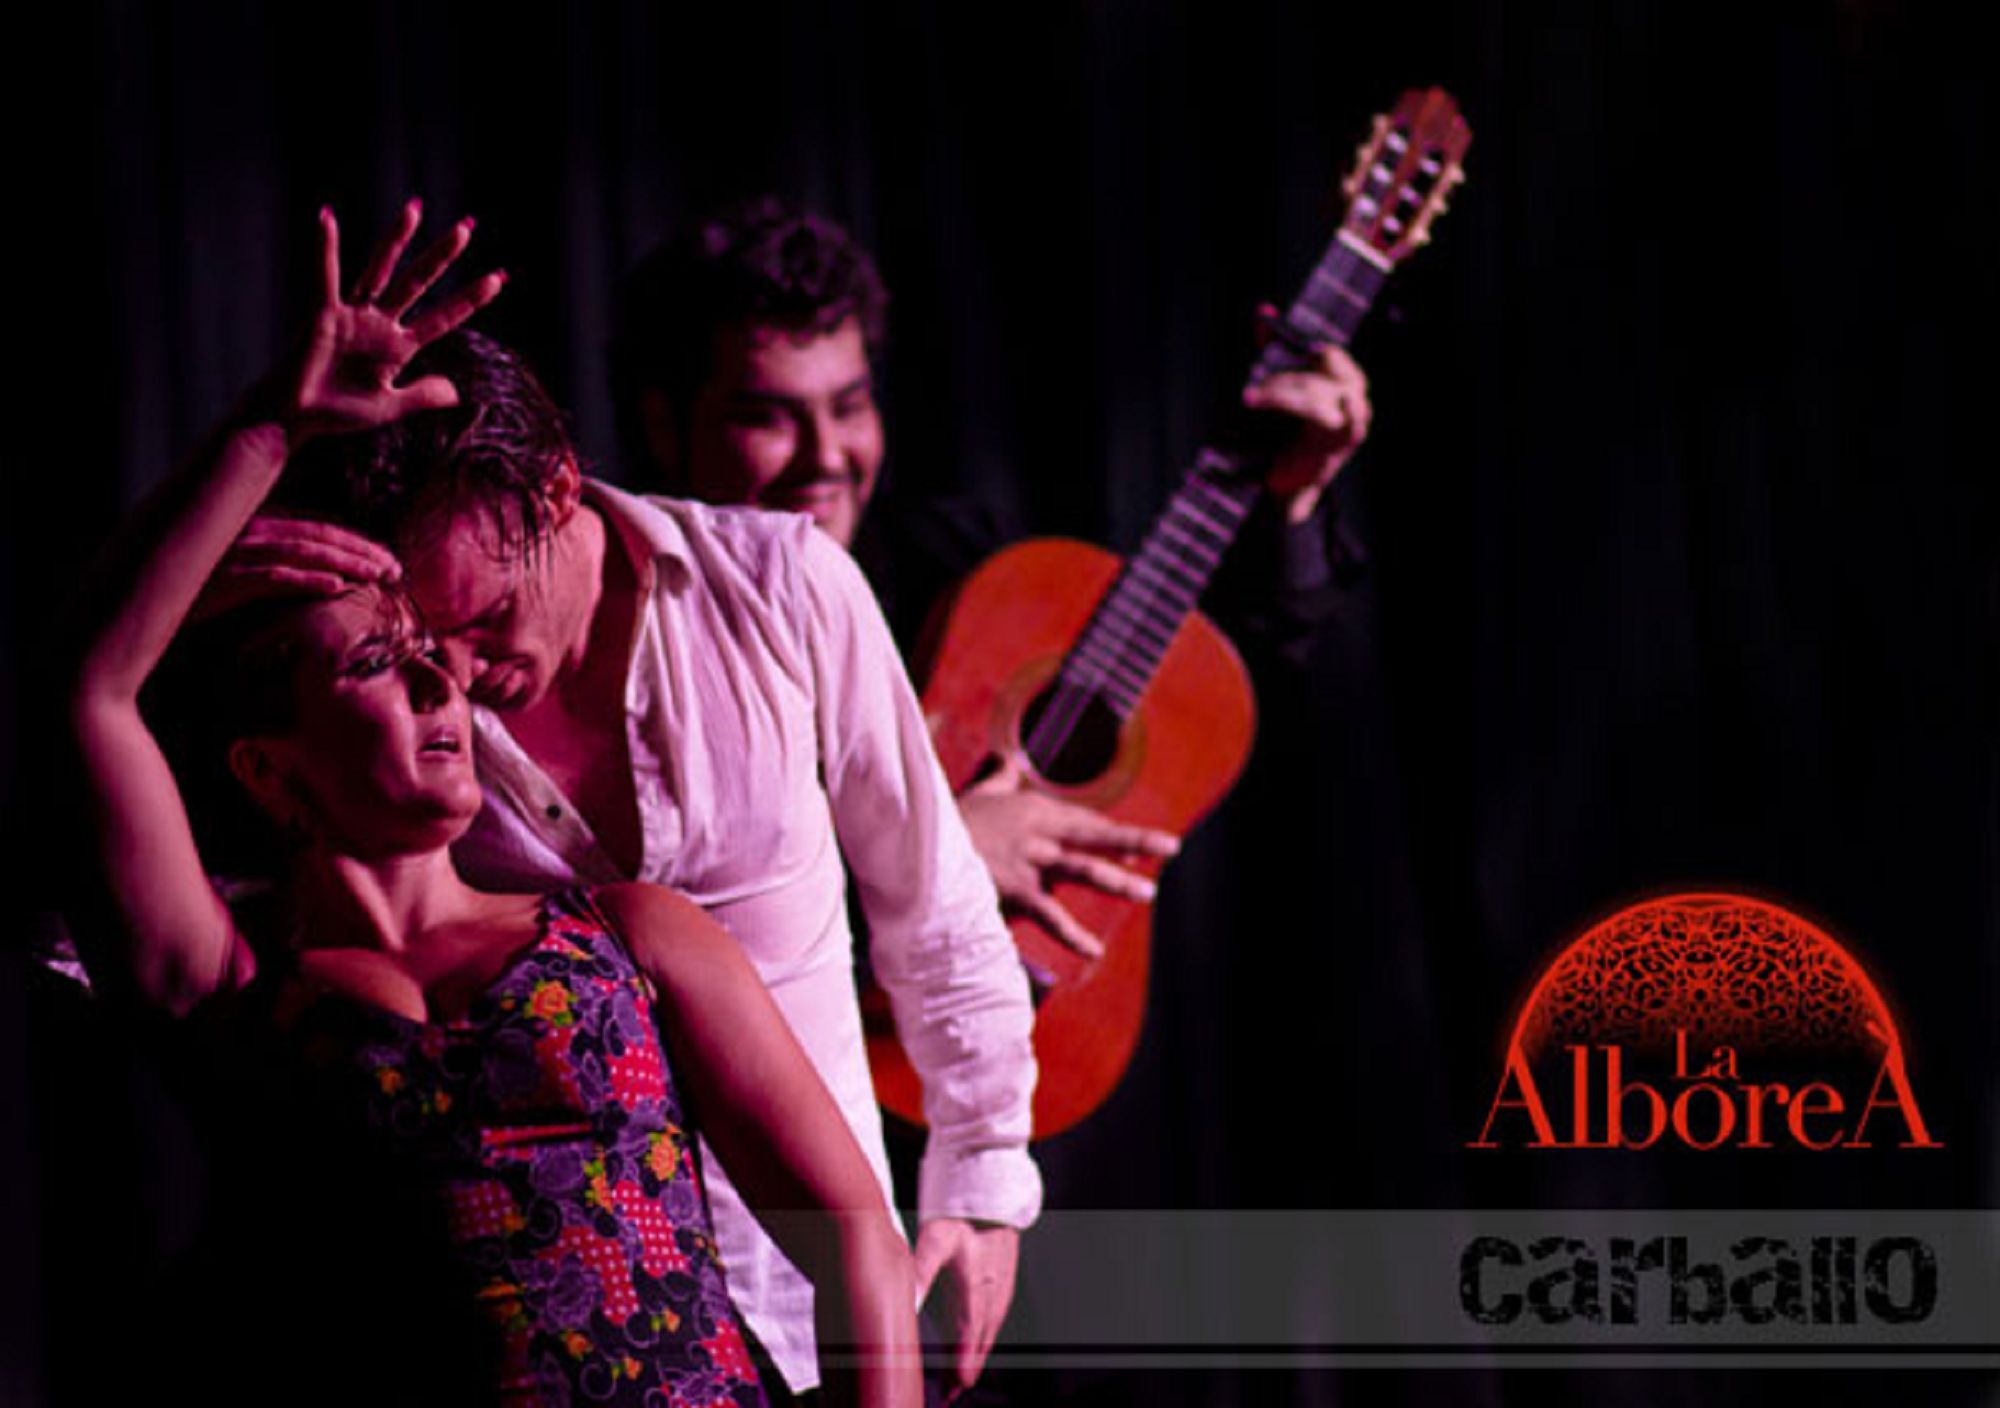 buchen online tickets karten eintrittskarten Fahrkarte touren Führungen besuche besuch Flamenco-Show in Granada La Alboreá